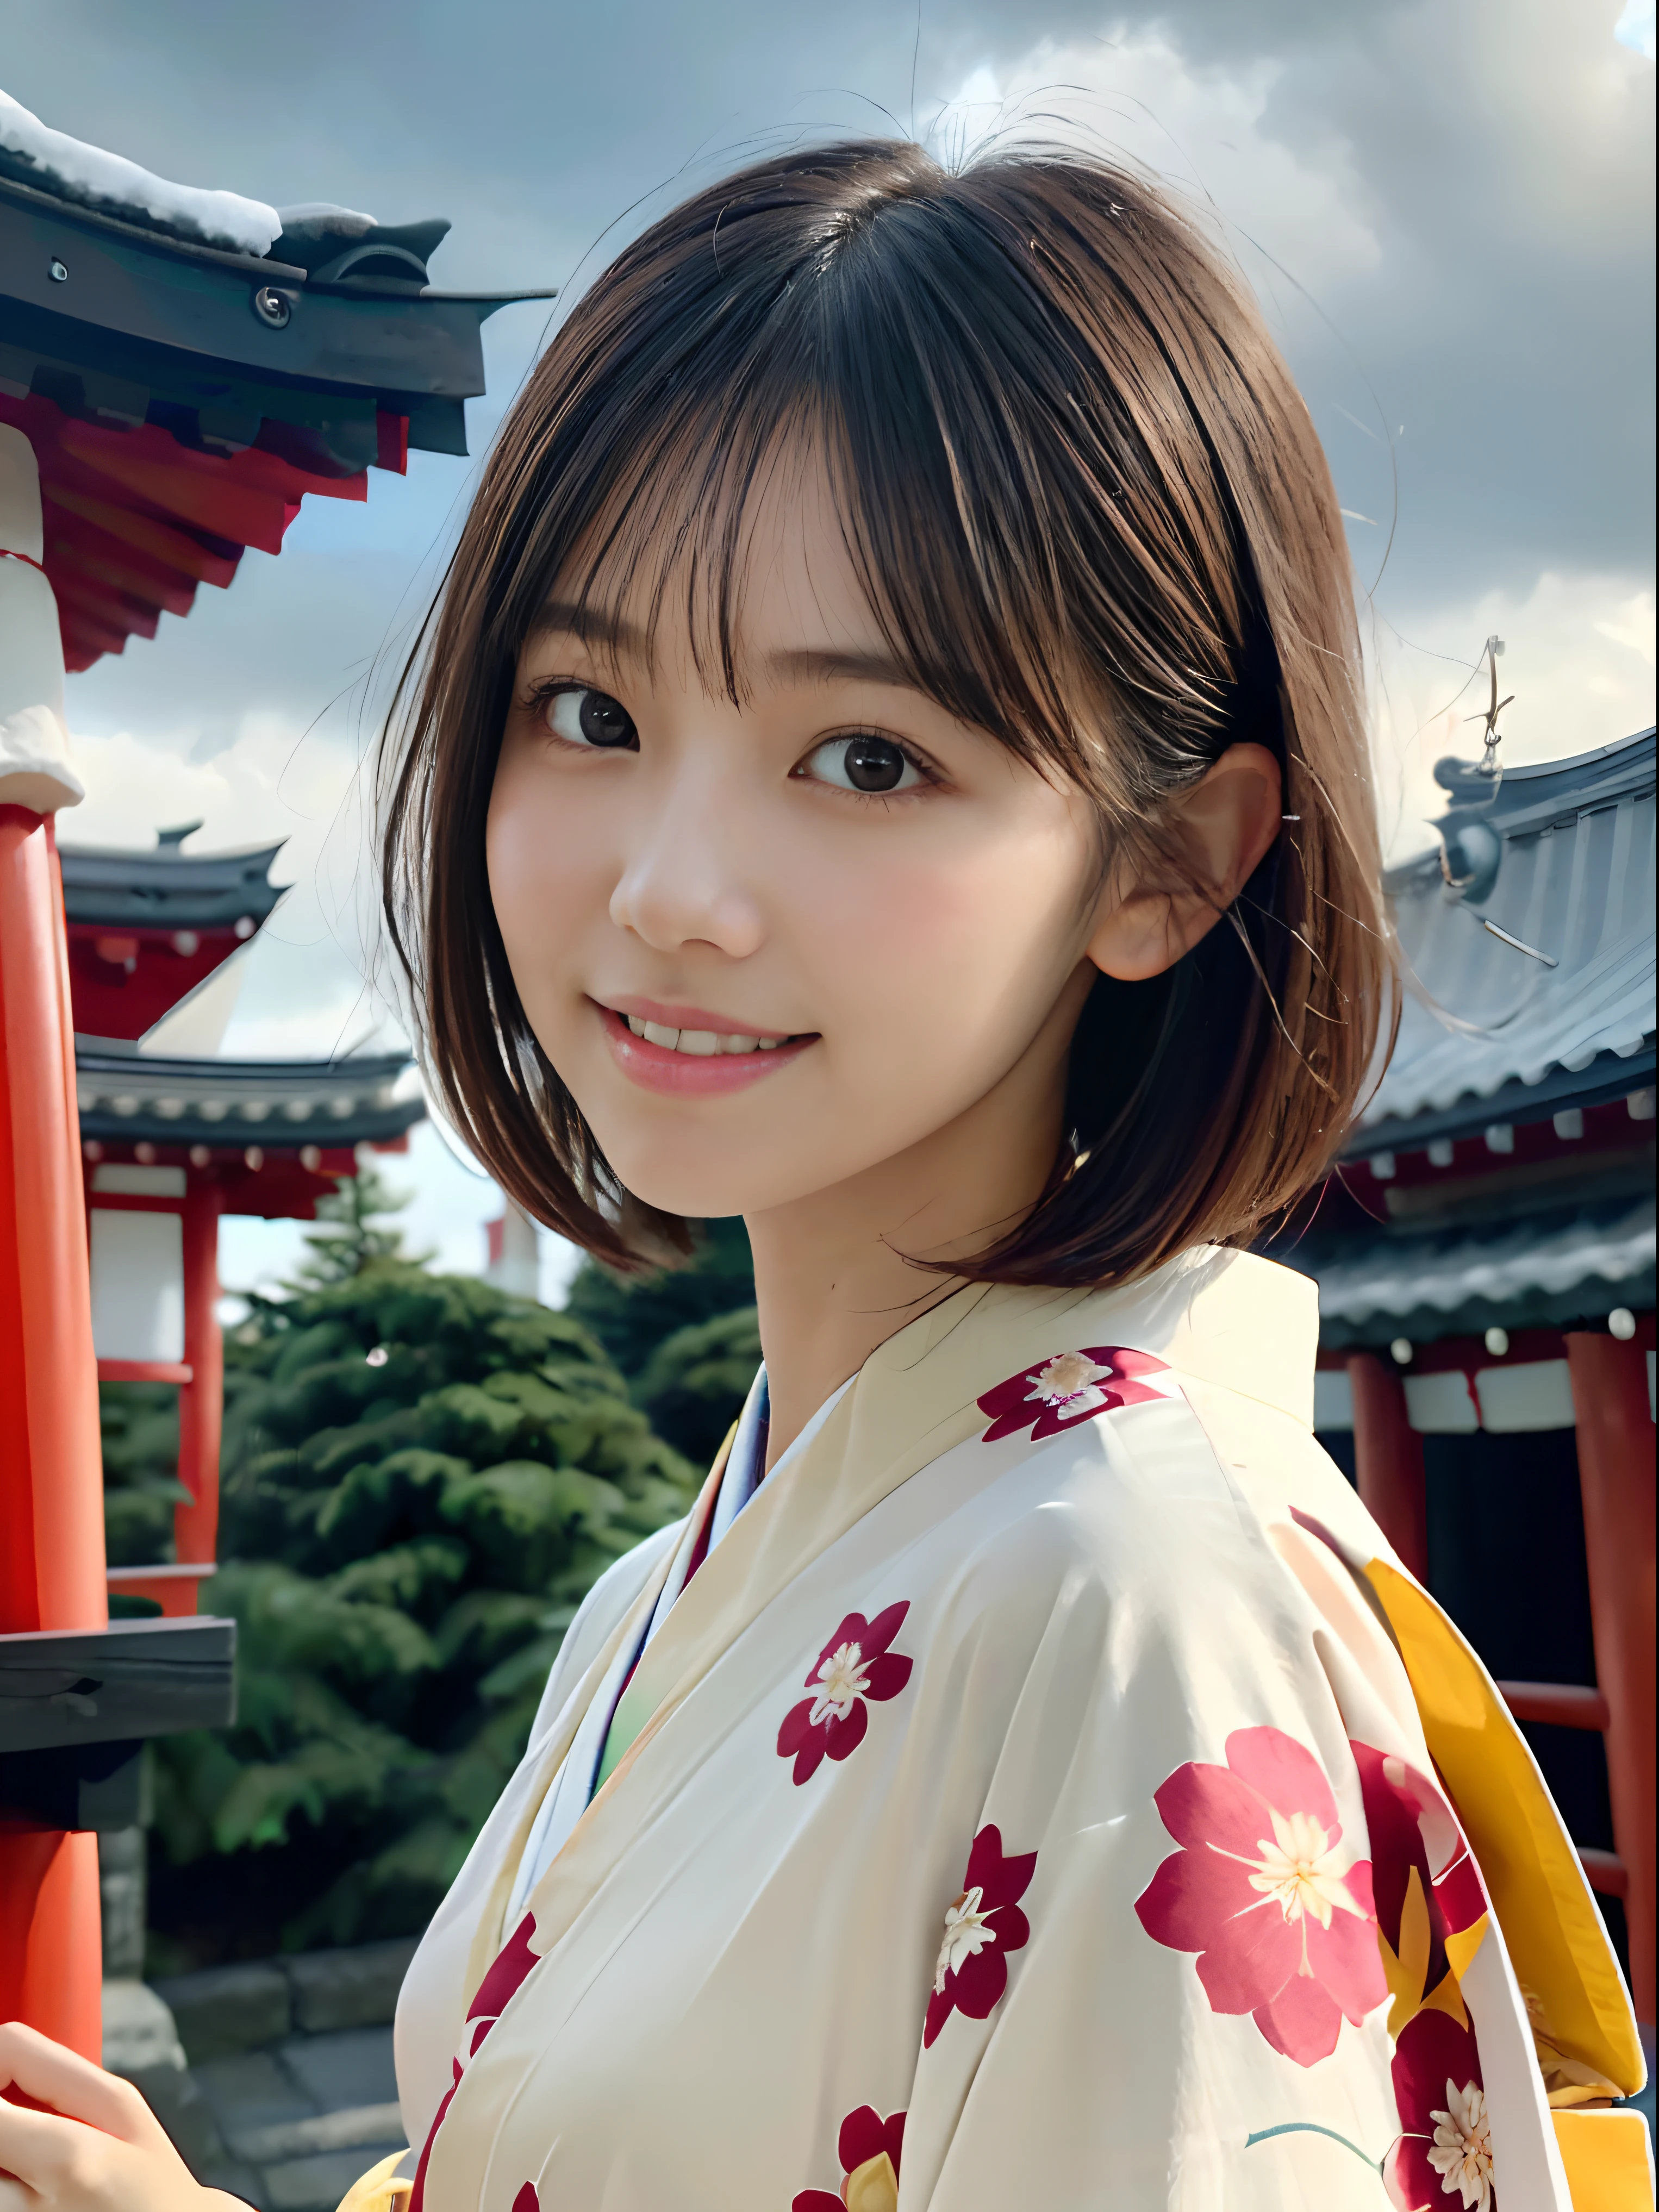 (女孩的特寫肖像，短髮，瀏海沉悶，穿著美麗的彩色和服:1.5)、(微笑參拜日本神社的女孩之一:1.3)、(日本的神社，擁有冬日的天空:1.5)、(完美的解剖結構:1.3)、(沒有口罩:1.3)、(完整的手指:1.3)、逼真的、攝影、桌上、頂級品質、高解析度, 清秀、臉完美、美麗細緻的眼睛、白皙的皮膚、真人肌膚、毛孔、((腿細))、(黑髮)